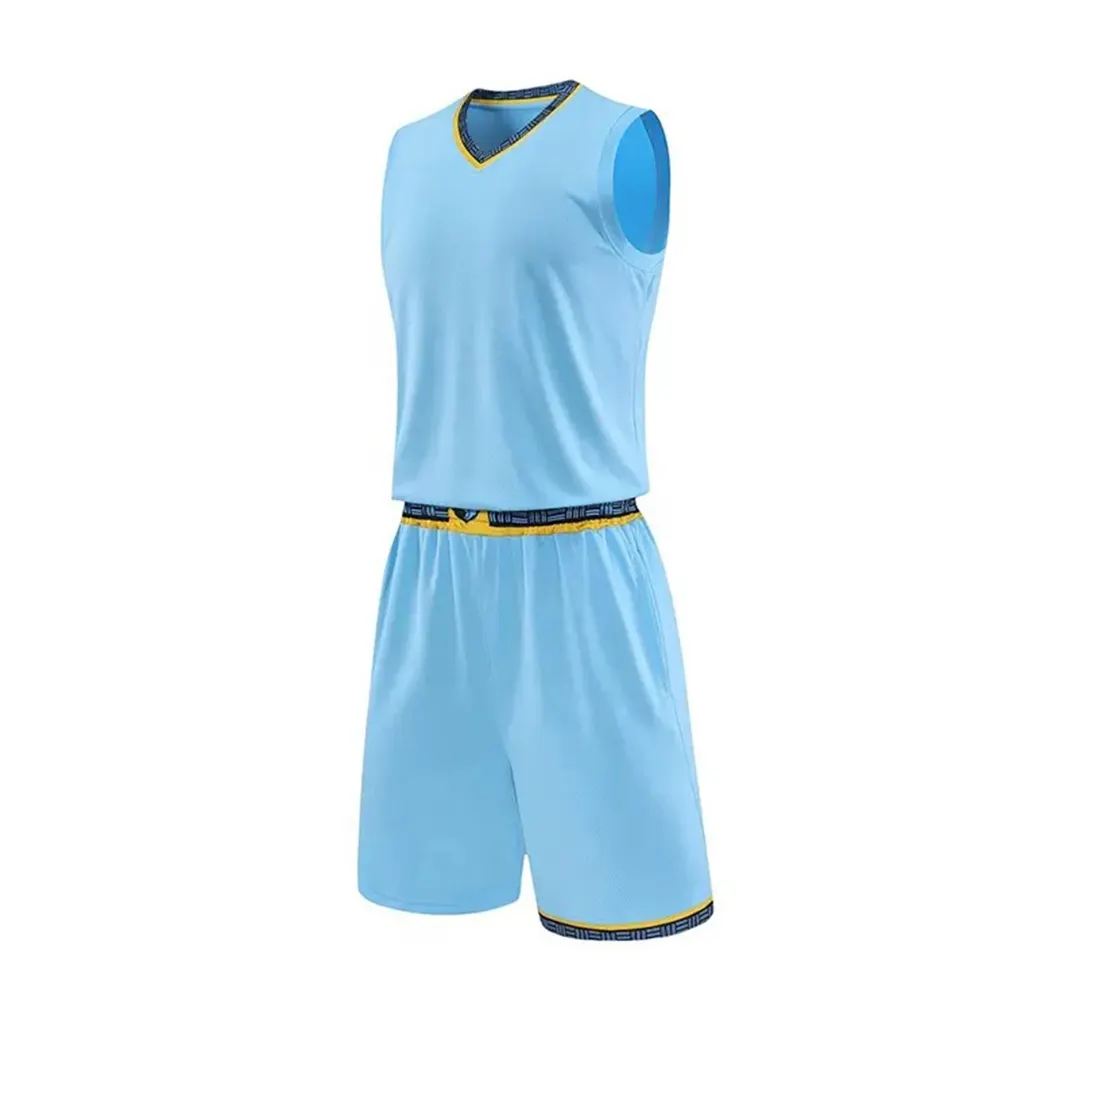 Rahat kolsuz erkekler basketbol üniforması Set kolaj eğitimi ve açık spor basketbol üniforması